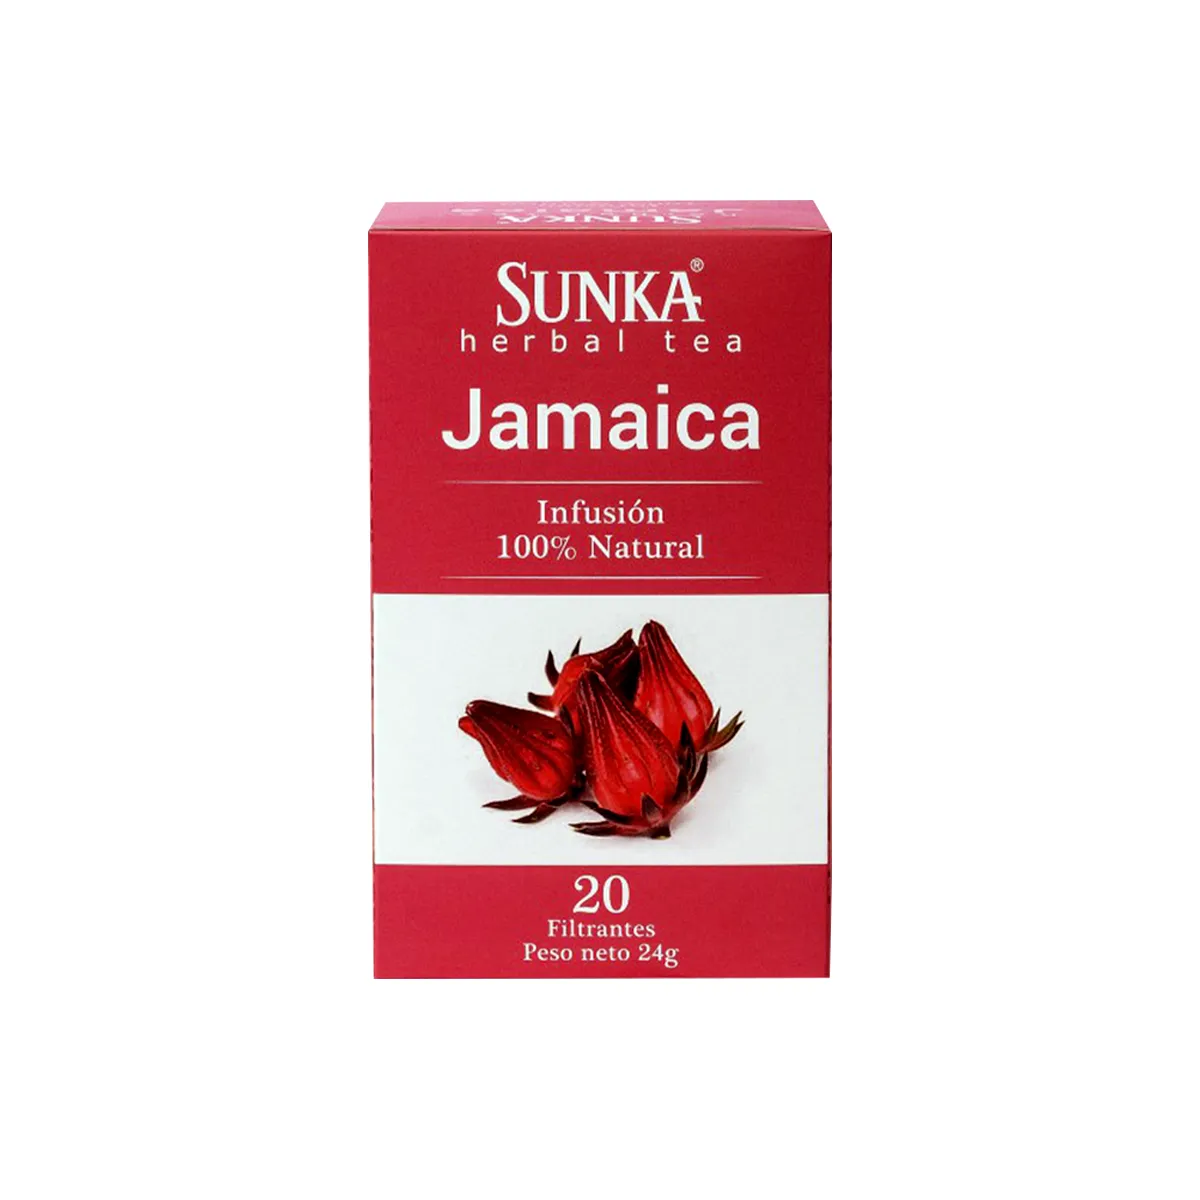 infusion de jamaica sunka